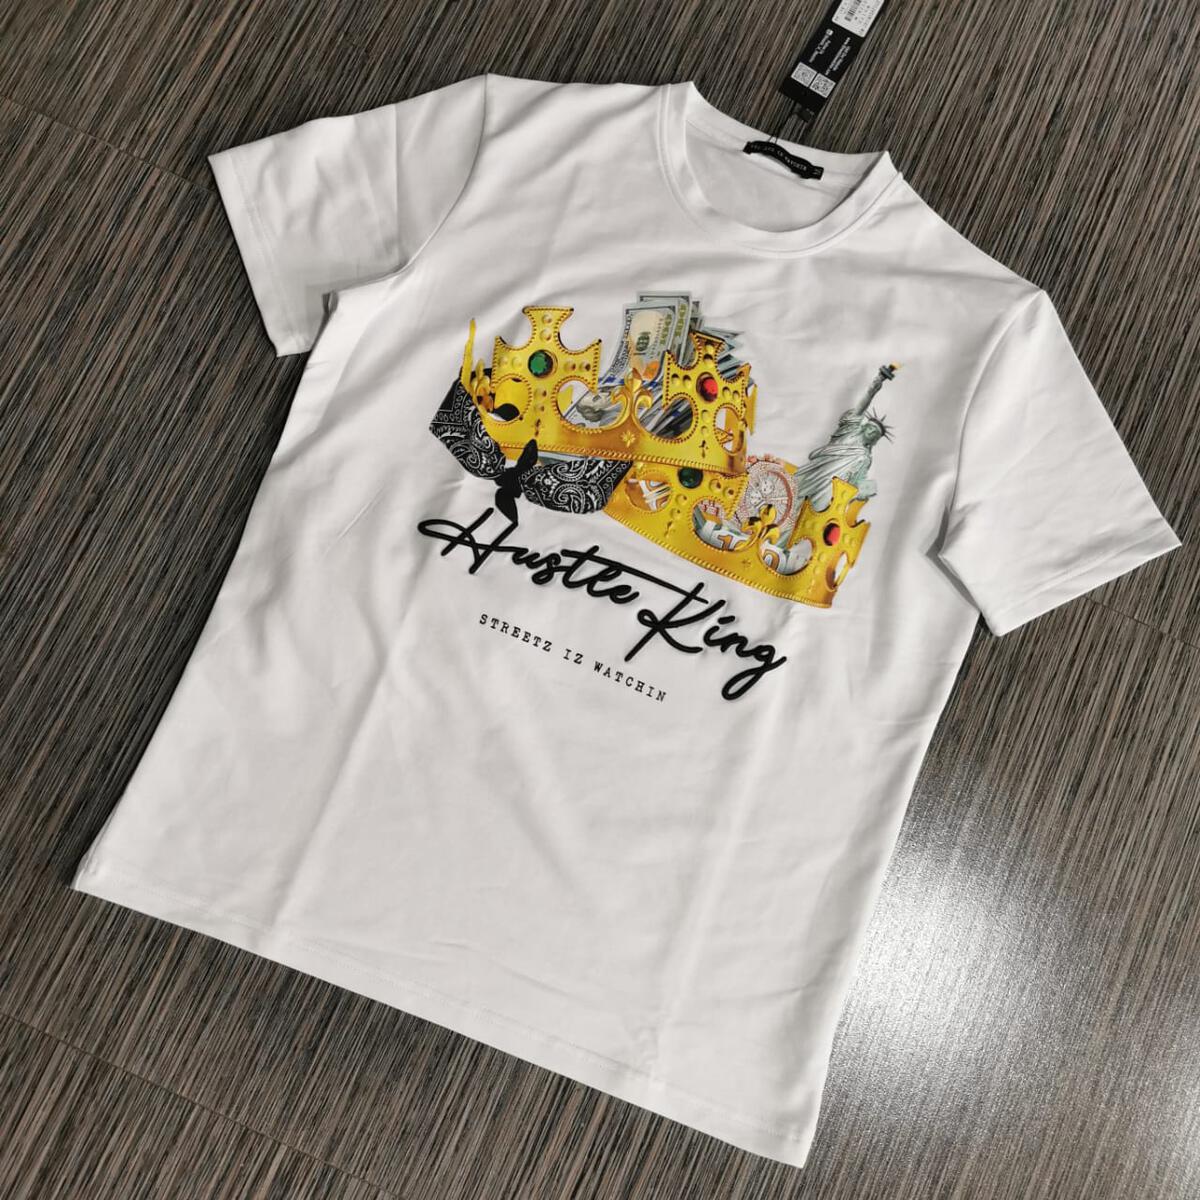 Street Hustle King White t-Shirt